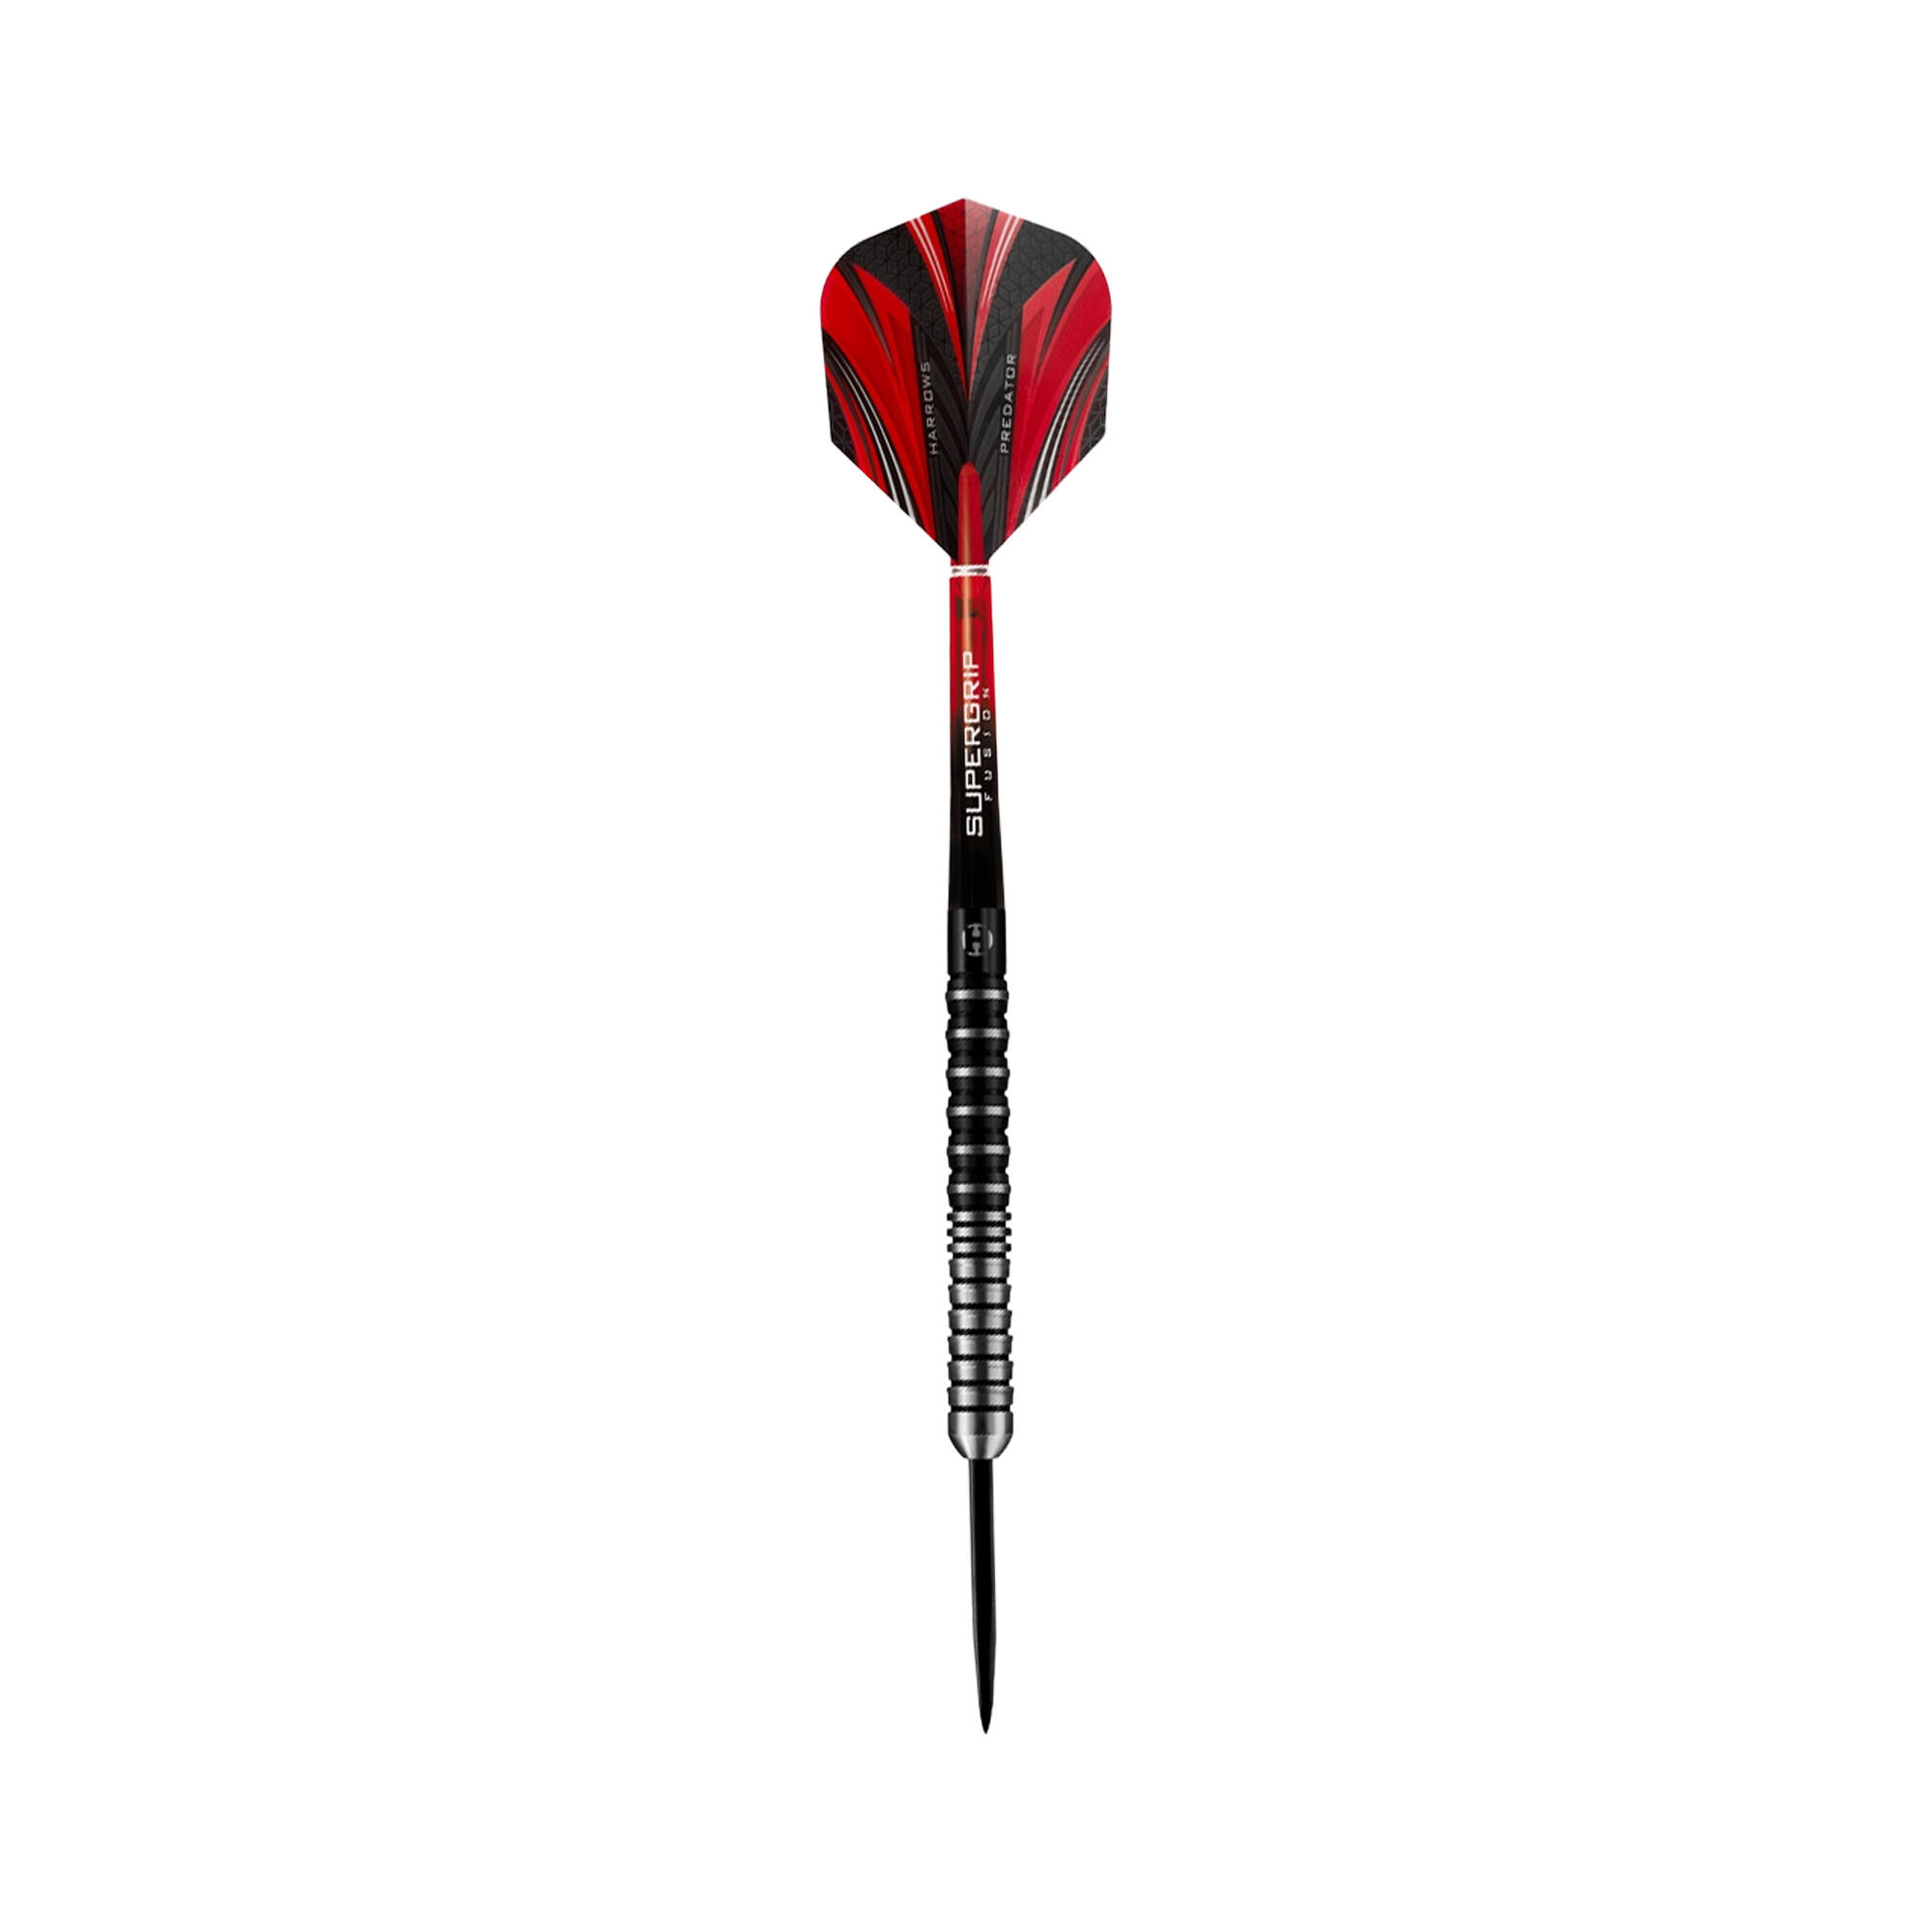 Predator Tungsten Darts (Pack of 5) (Black/Red) 2/4